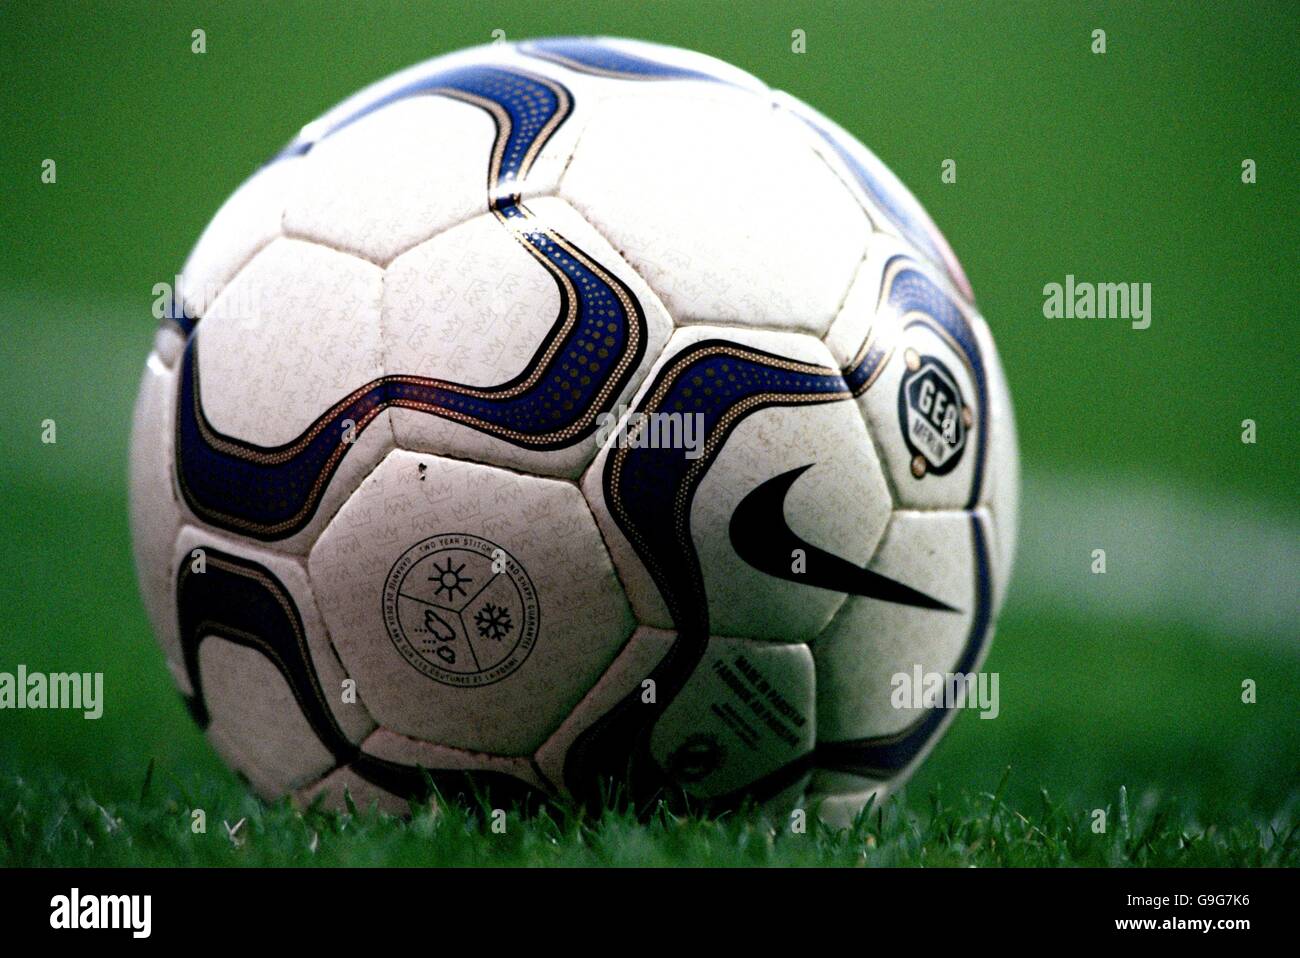 Fútbol - FA Carling Premiership - West Ham United contra Aston Villa. El balón Nike Geo, el balón oficial de la Fa Carling Premiership Foto de stock